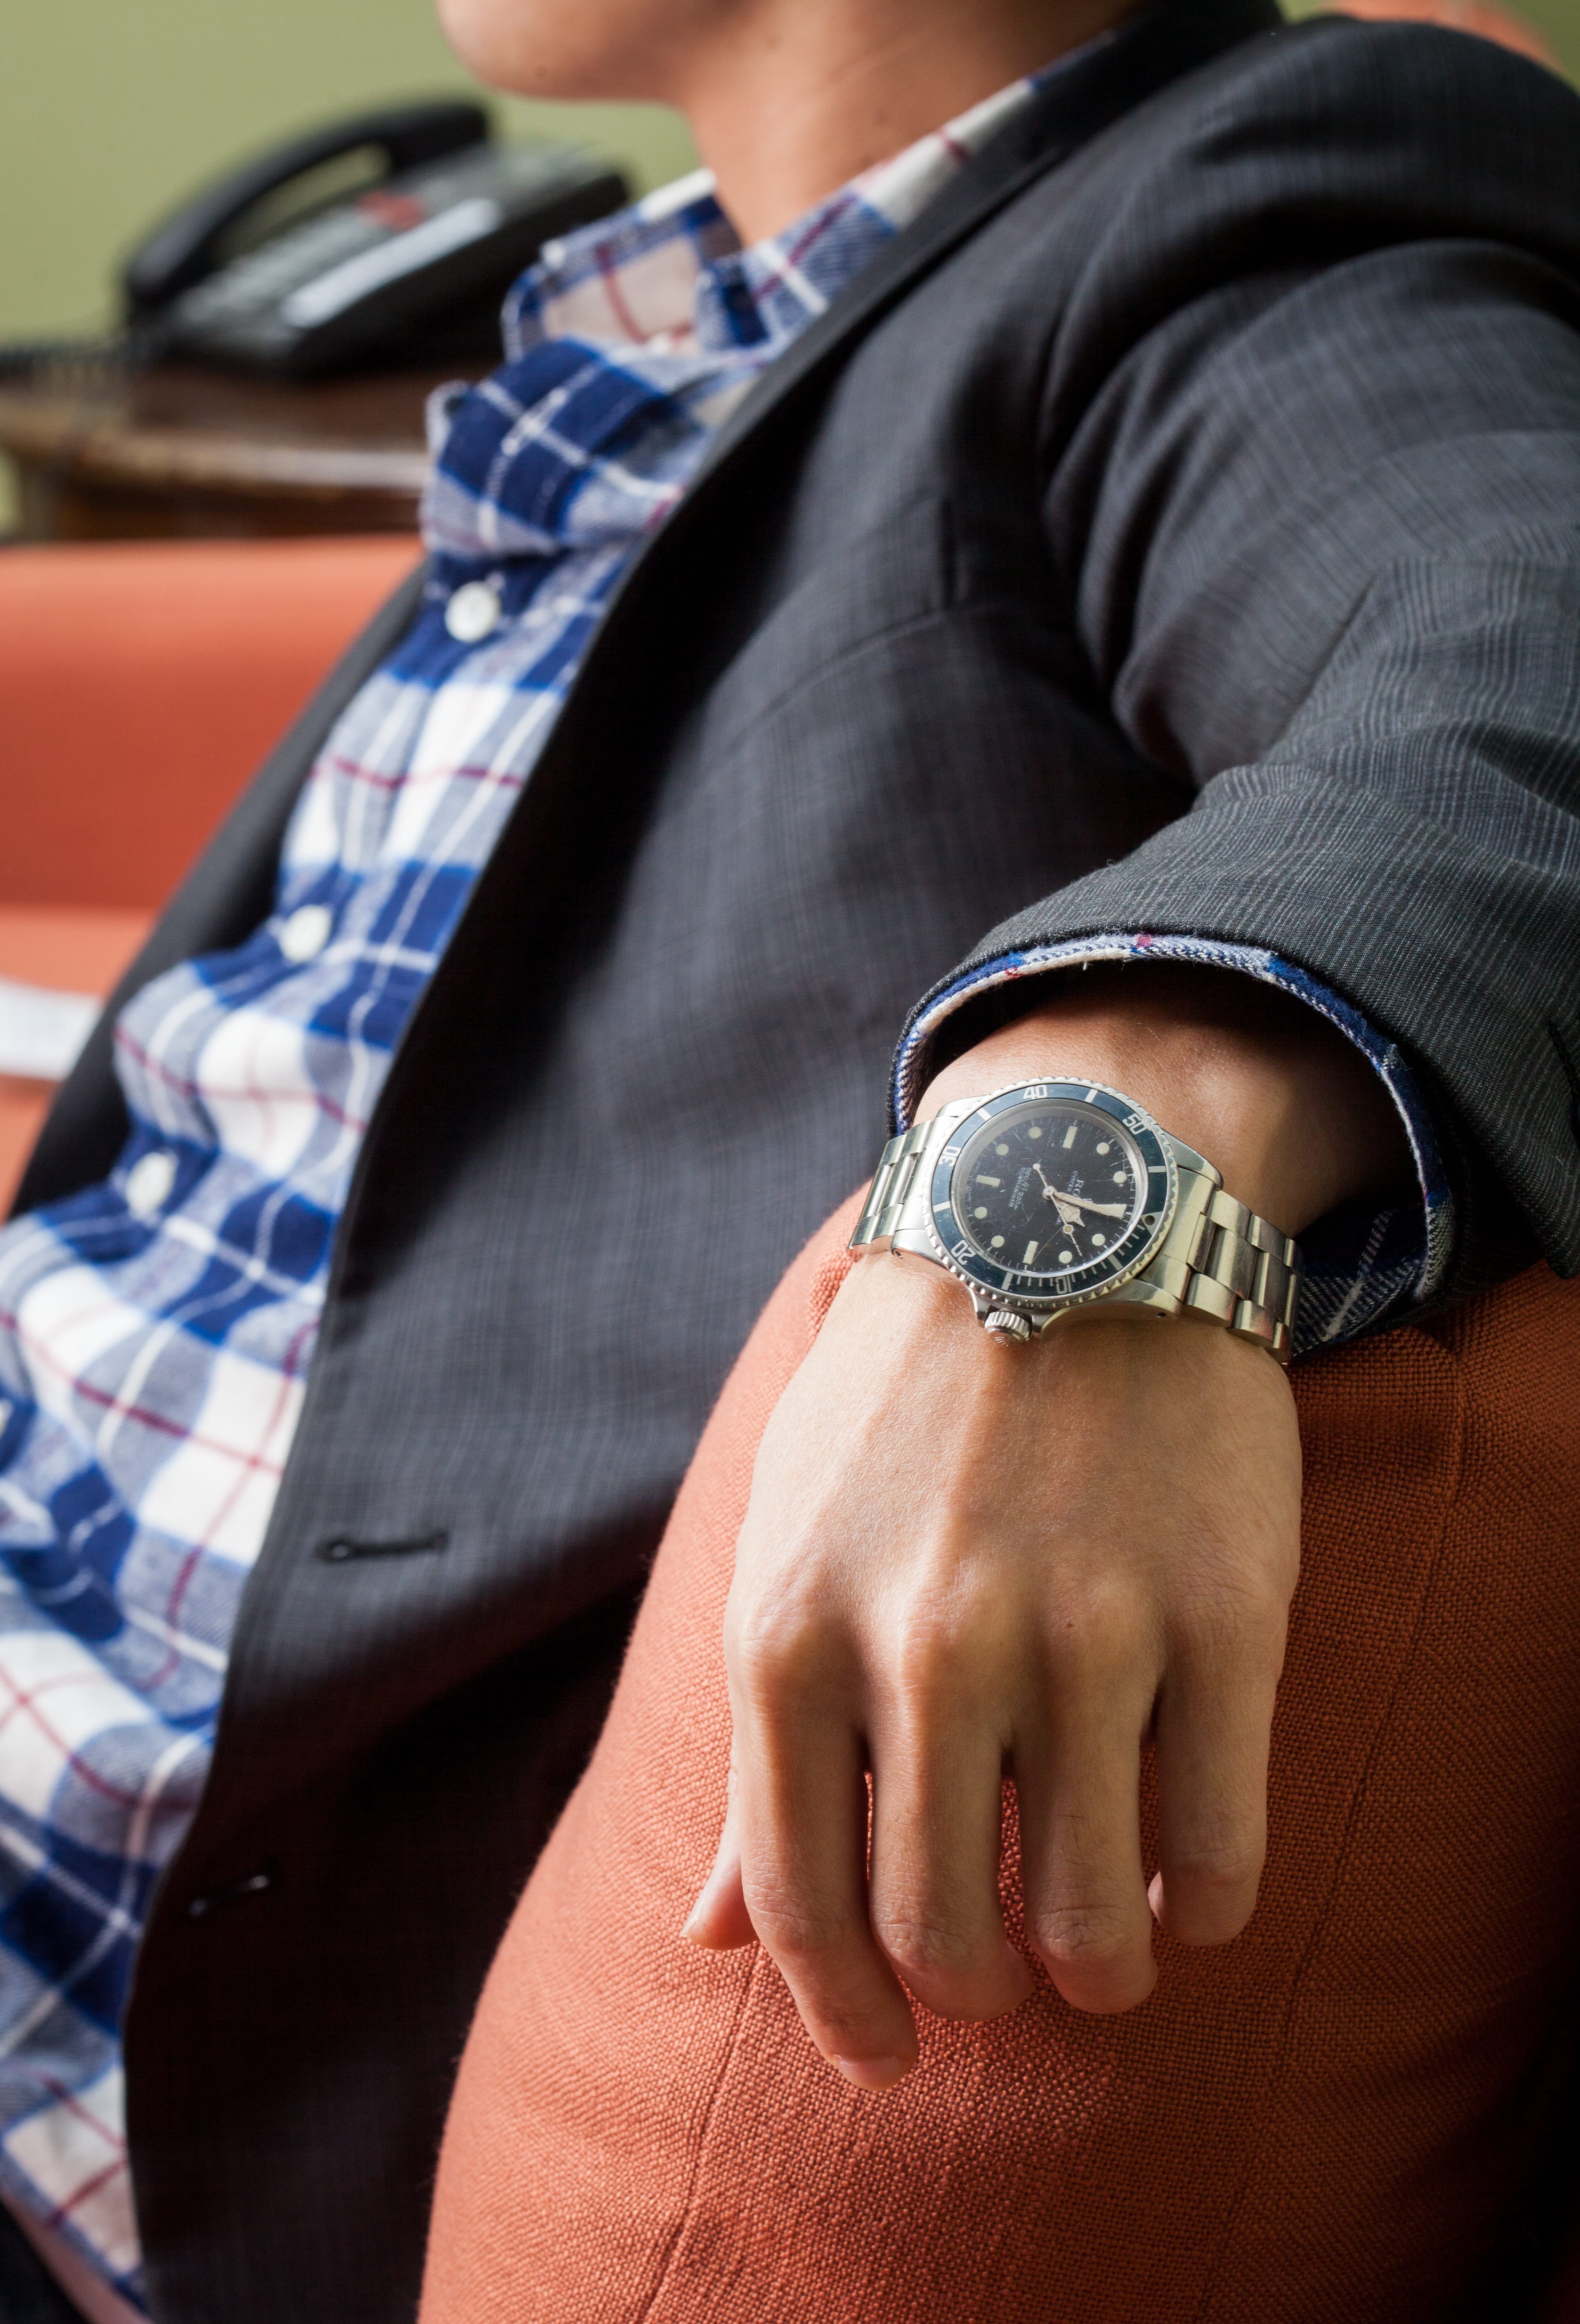 Какие есть часы на руку. Rolex Submariner on hand. Мужские часы на руке. Рука часы элегантная. Мужчина с часами на руке.